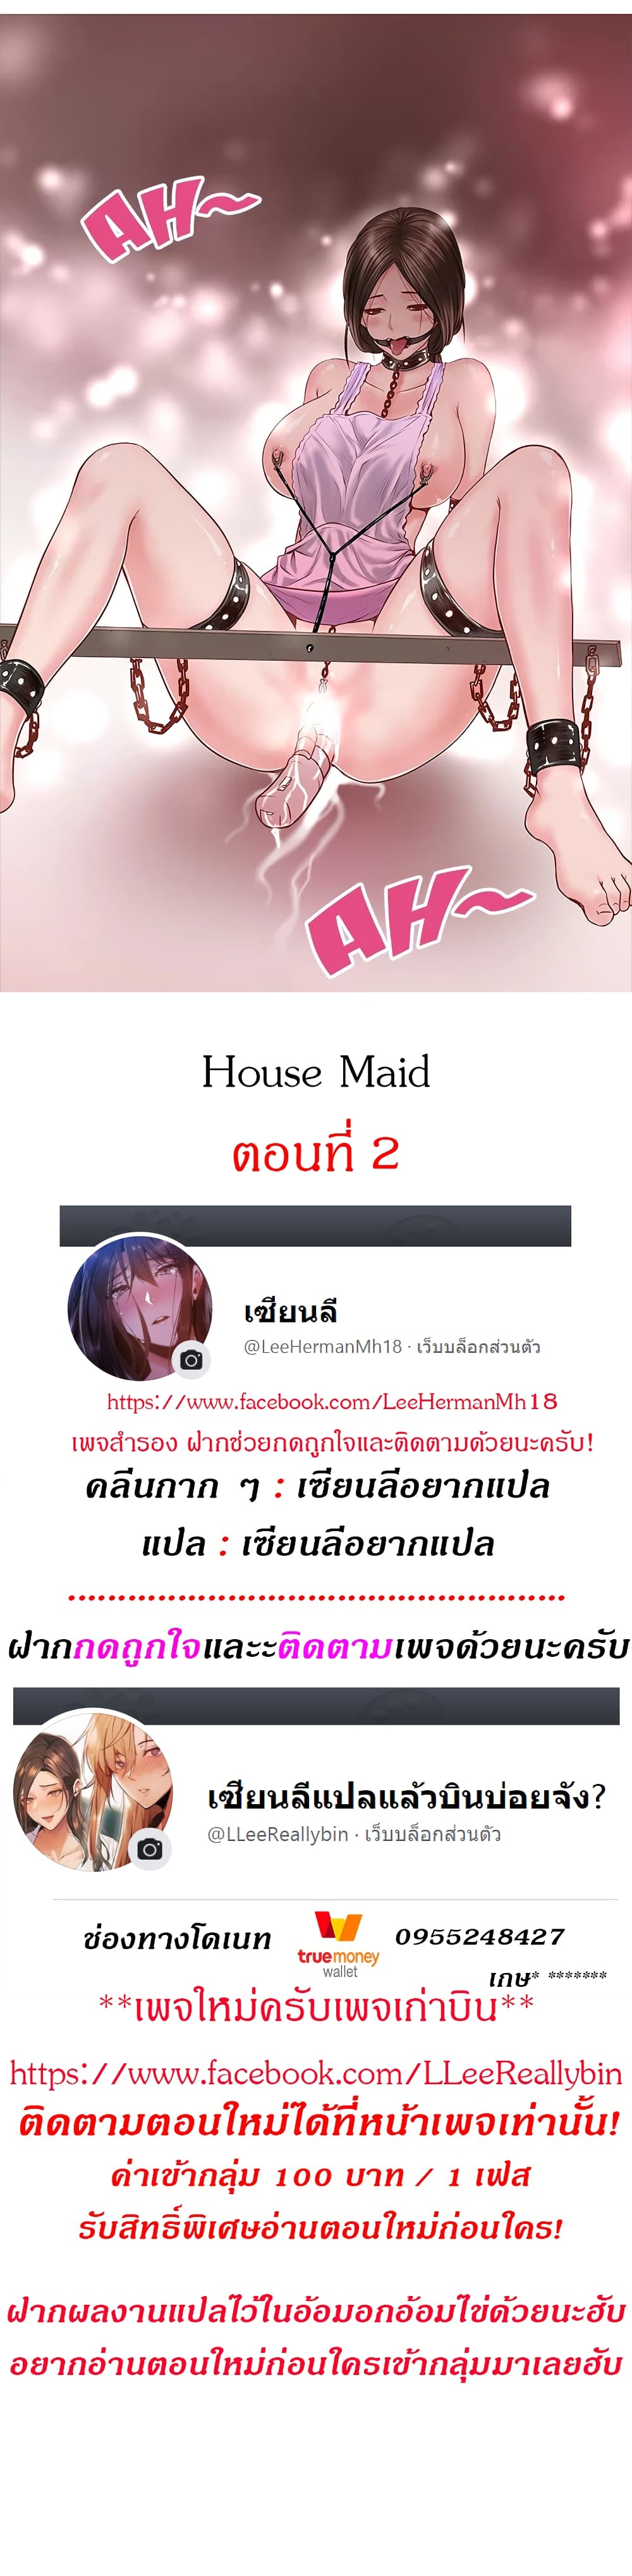 House Maid2 (2)